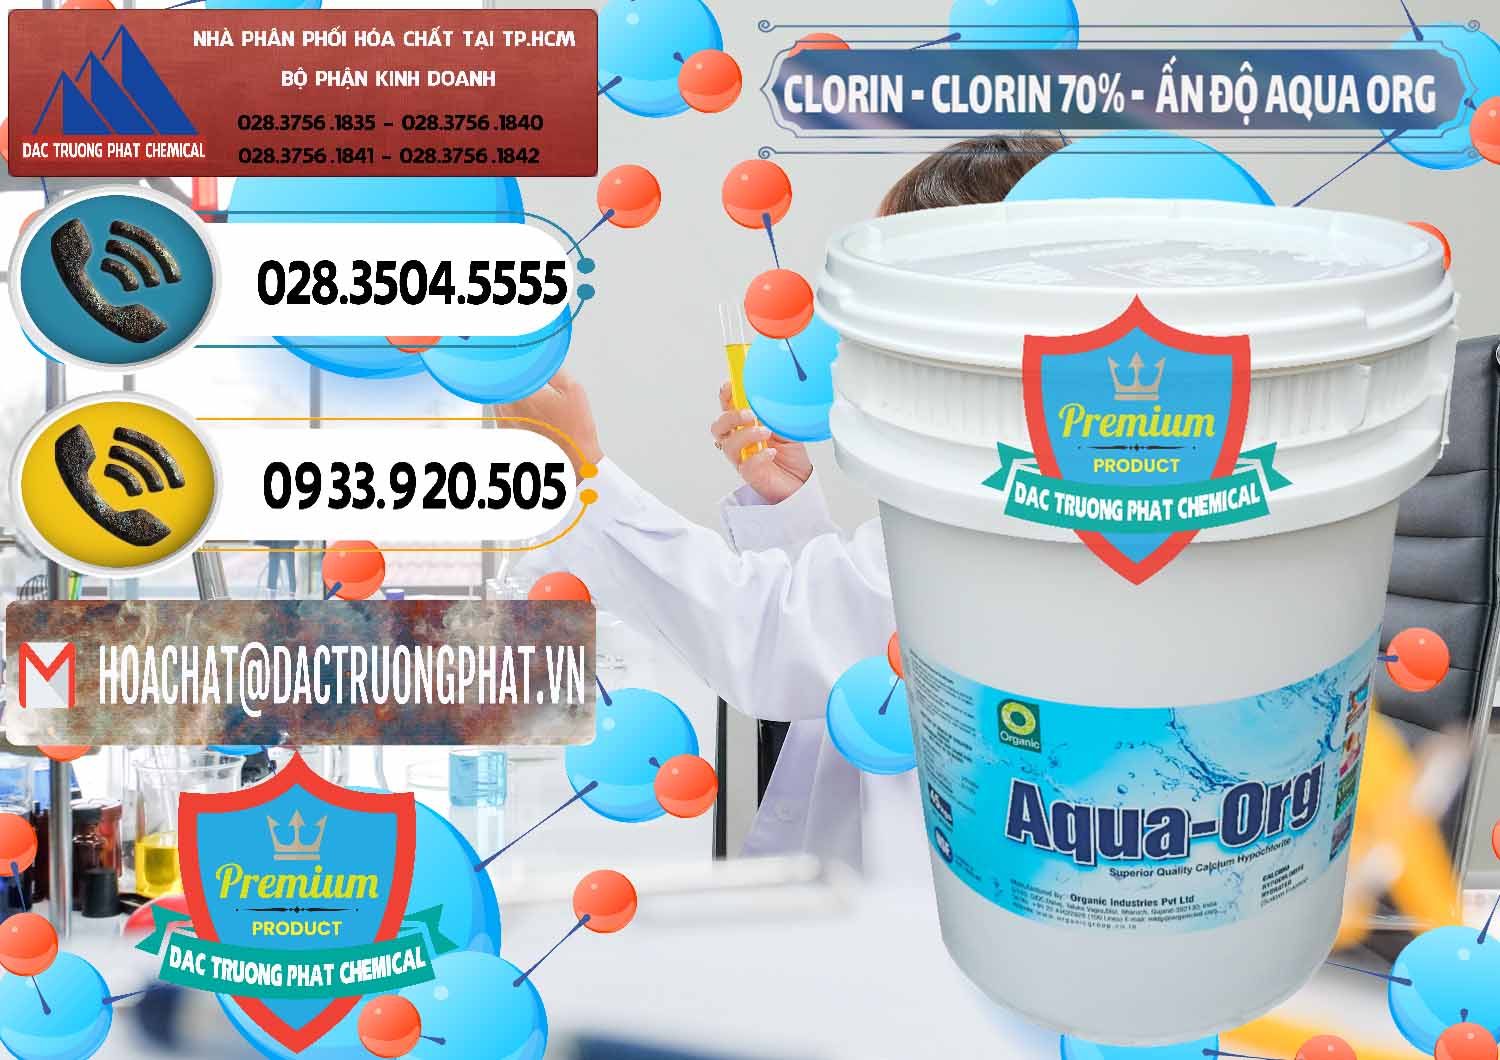 Nơi kinh doanh & bán Chlorine – Clorin Ấn Độ Aqua ORG Organic India - 0051 - Nơi chuyên kinh doanh ( phân phối ) hóa chất tại TP.HCM - hoachatdetnhuom.vn